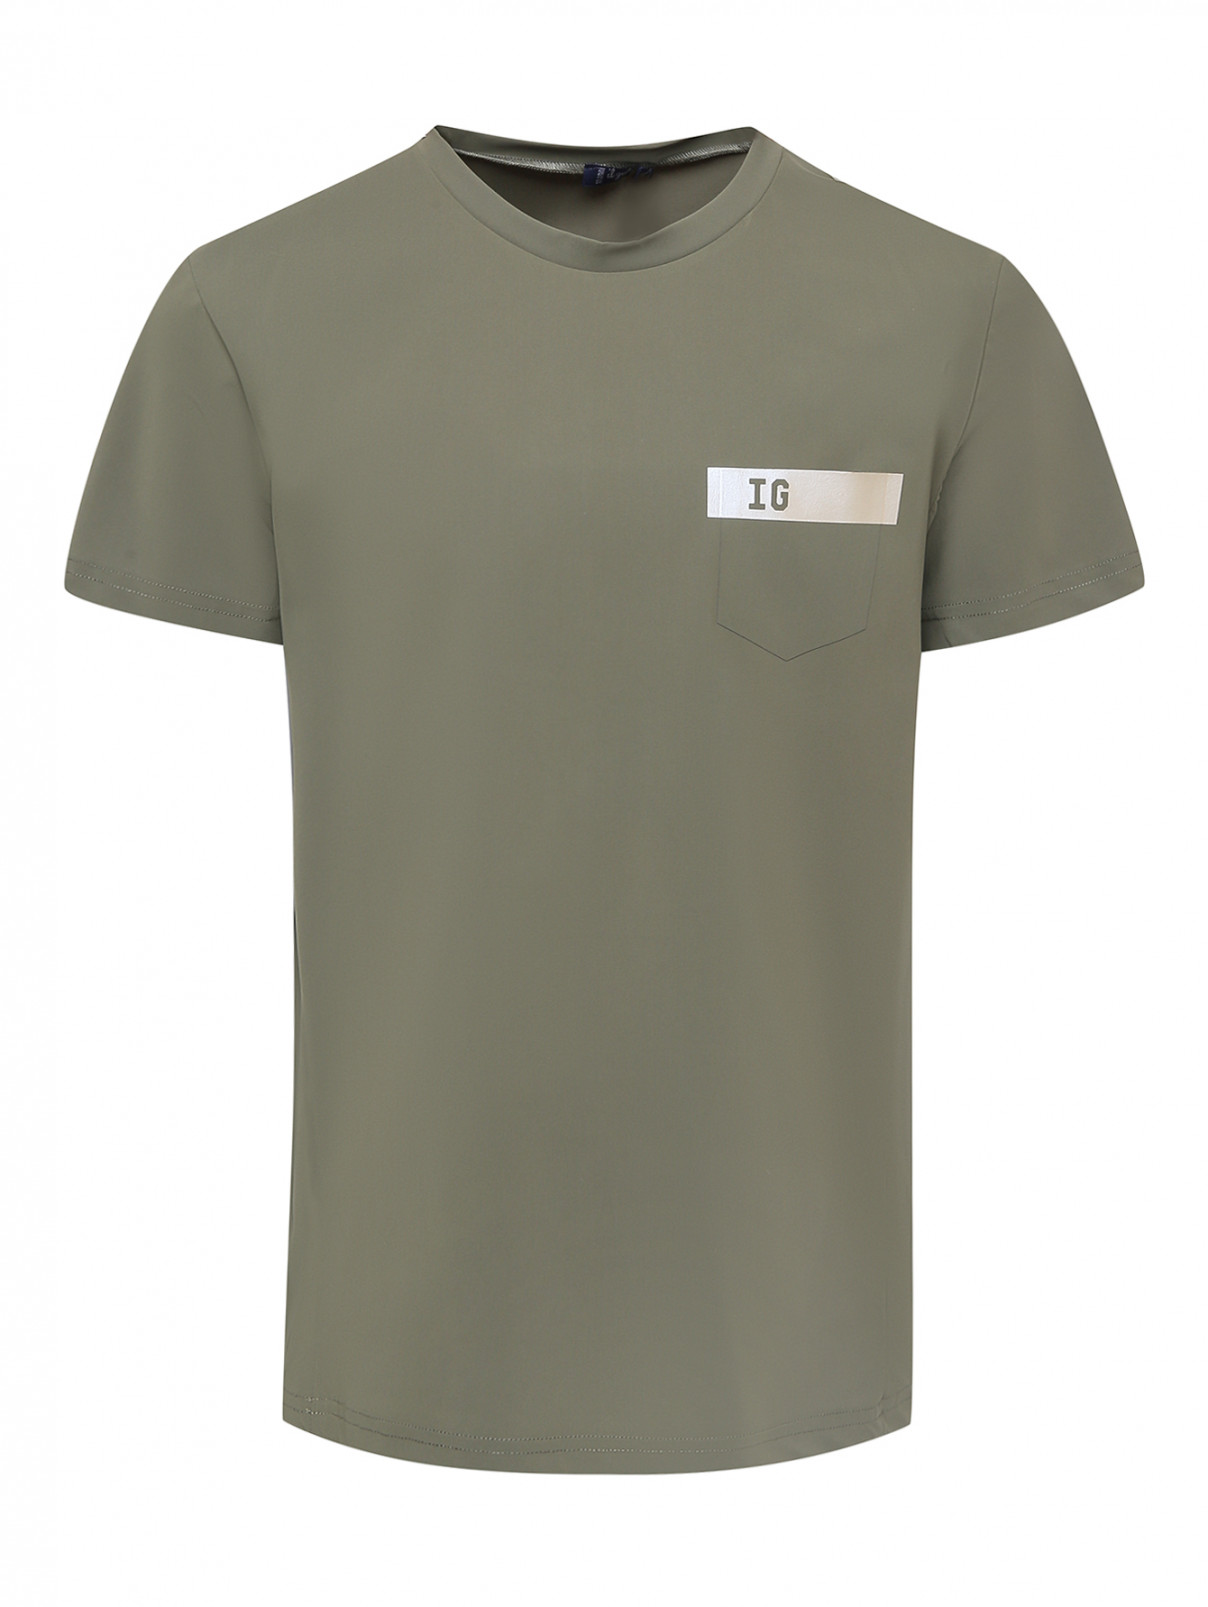 Спортивная футболка с принтом Il Gufo  –  Общий вид  – Цвет:  Зеленый